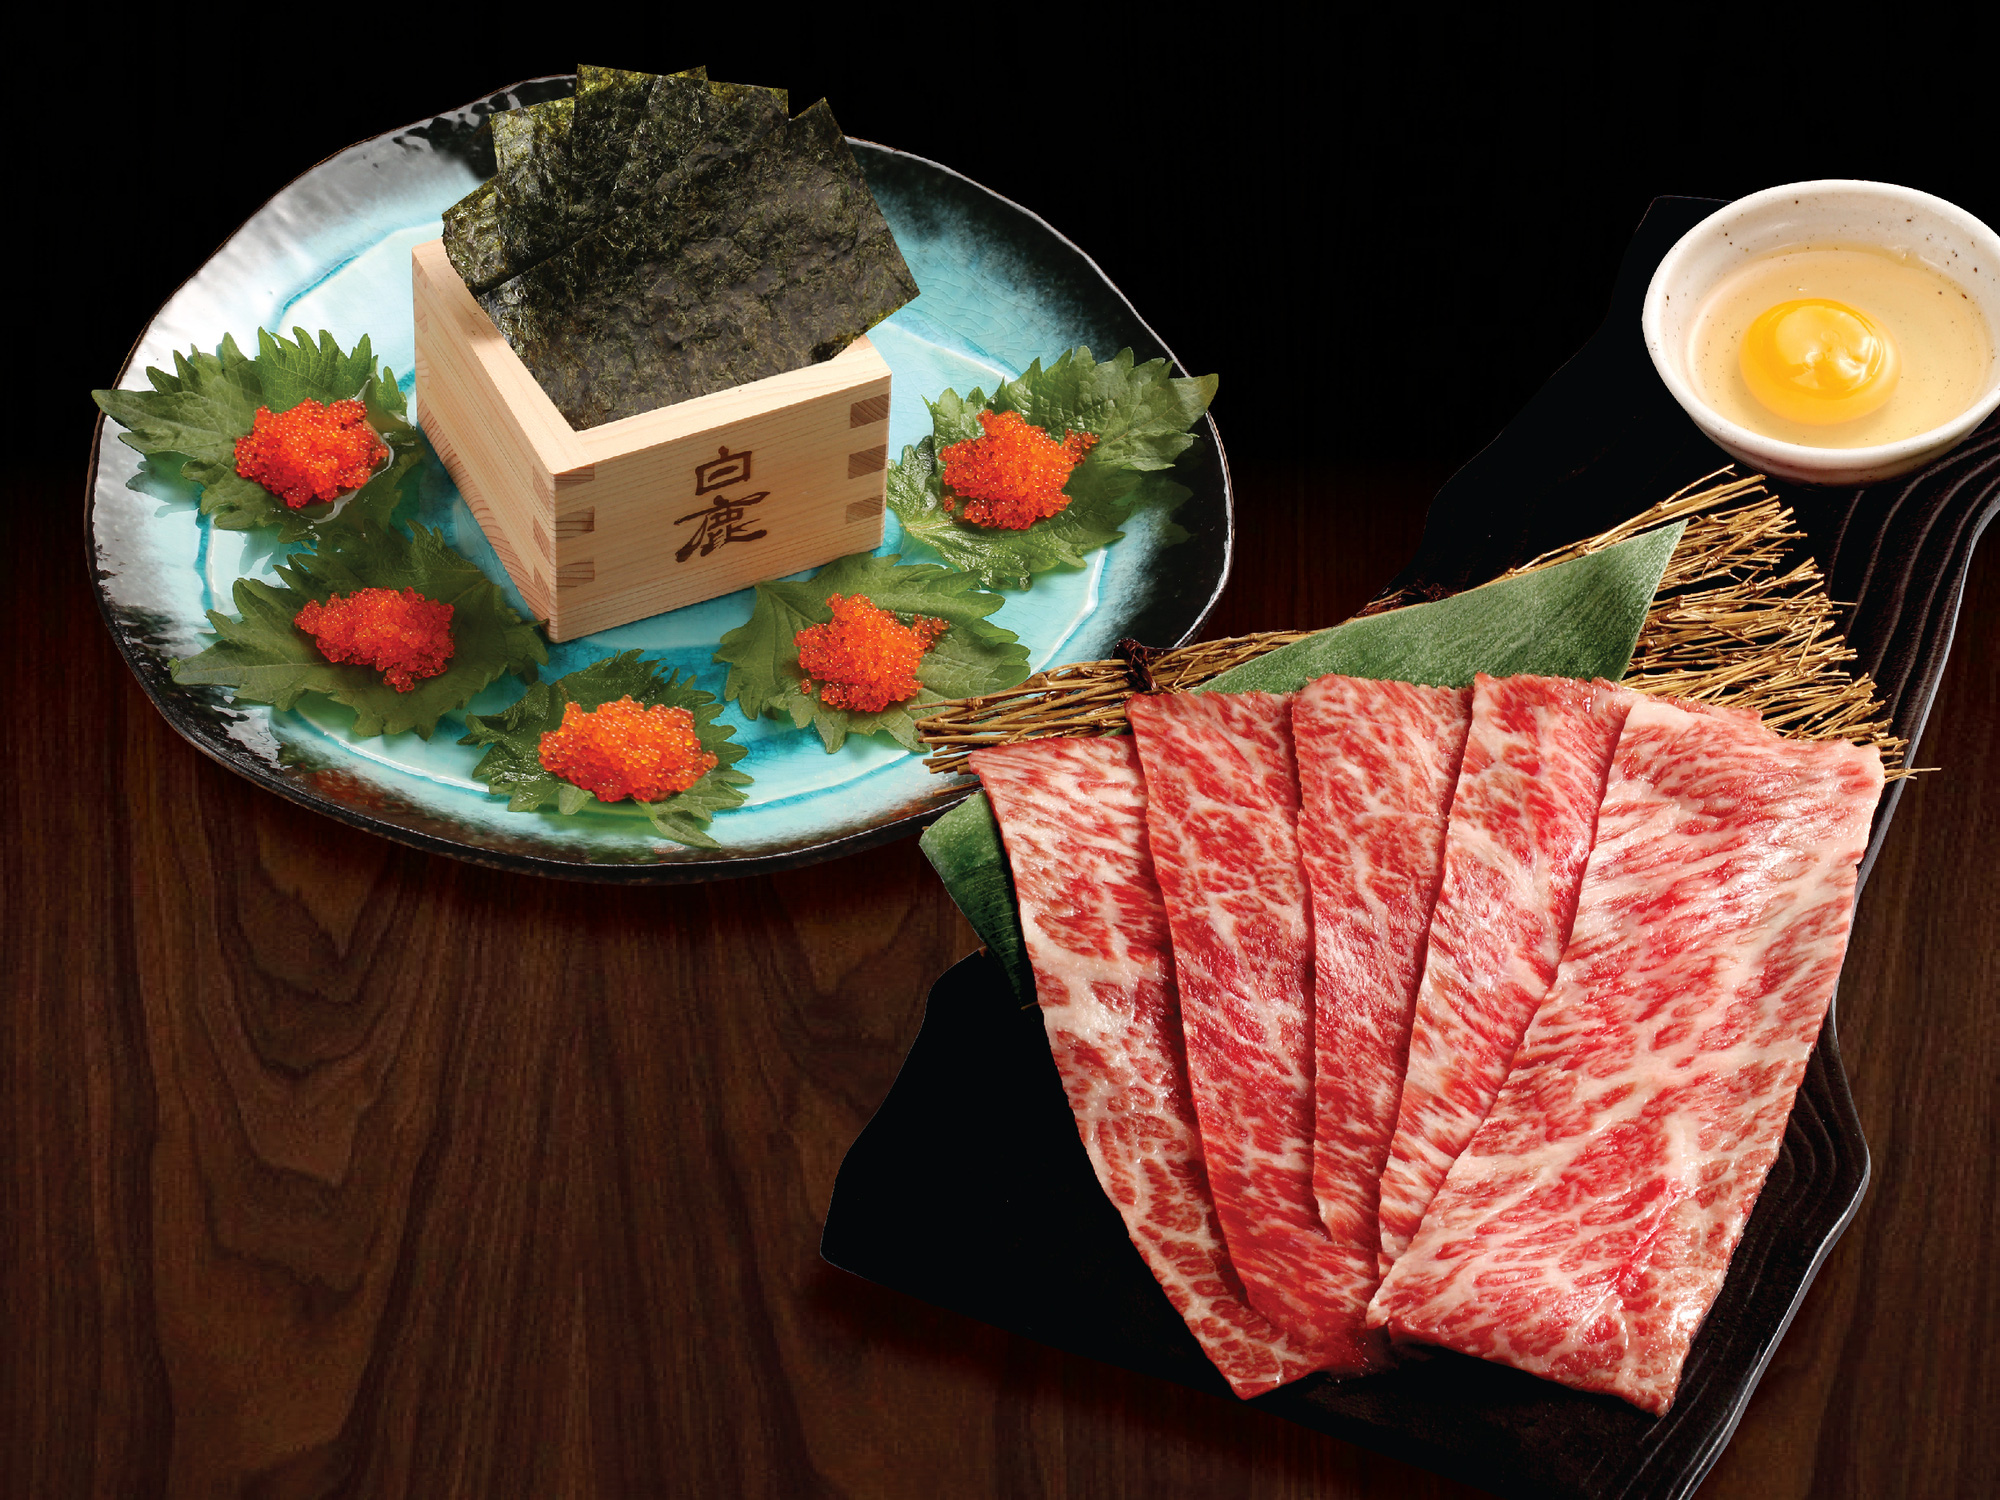 Siêu phẩm thịt đỏ đến từ Nhật Bản - Bò Wagyu Sendai - Ảnh 5.